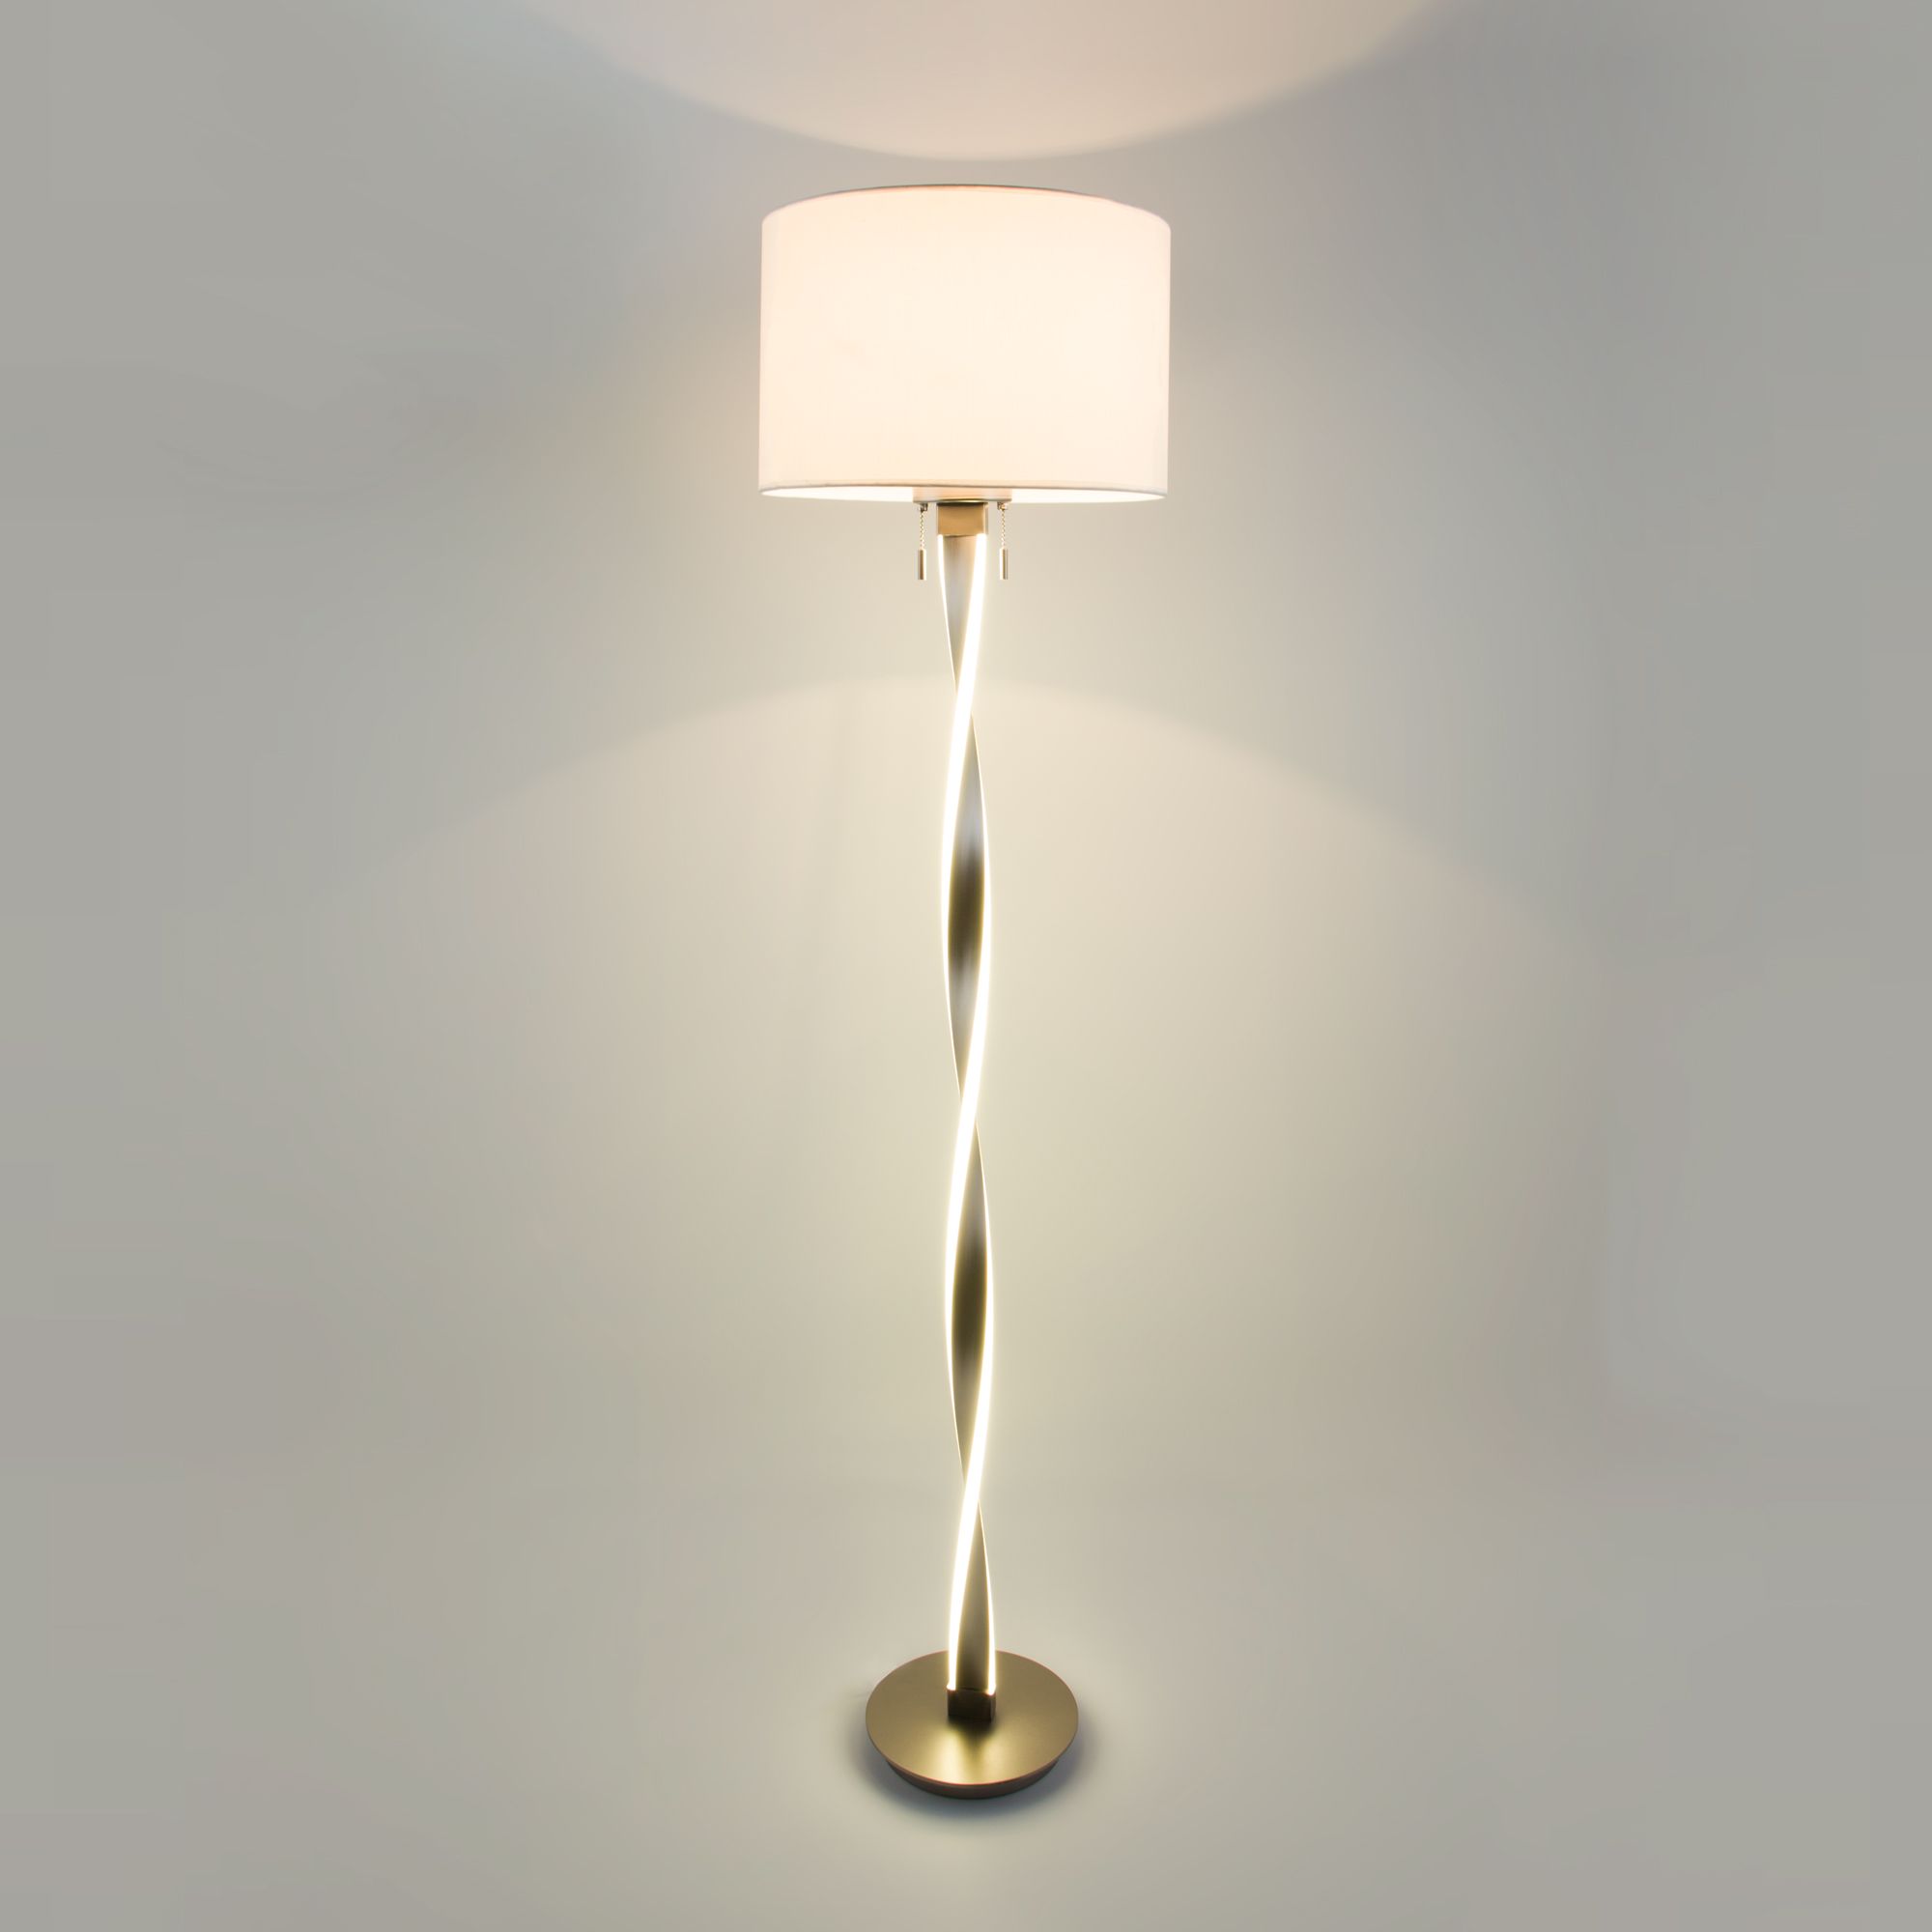 Напольный светодиодный светильник с тканевым абажуром Bogate's Titan 992 белый / никель. Фото 5